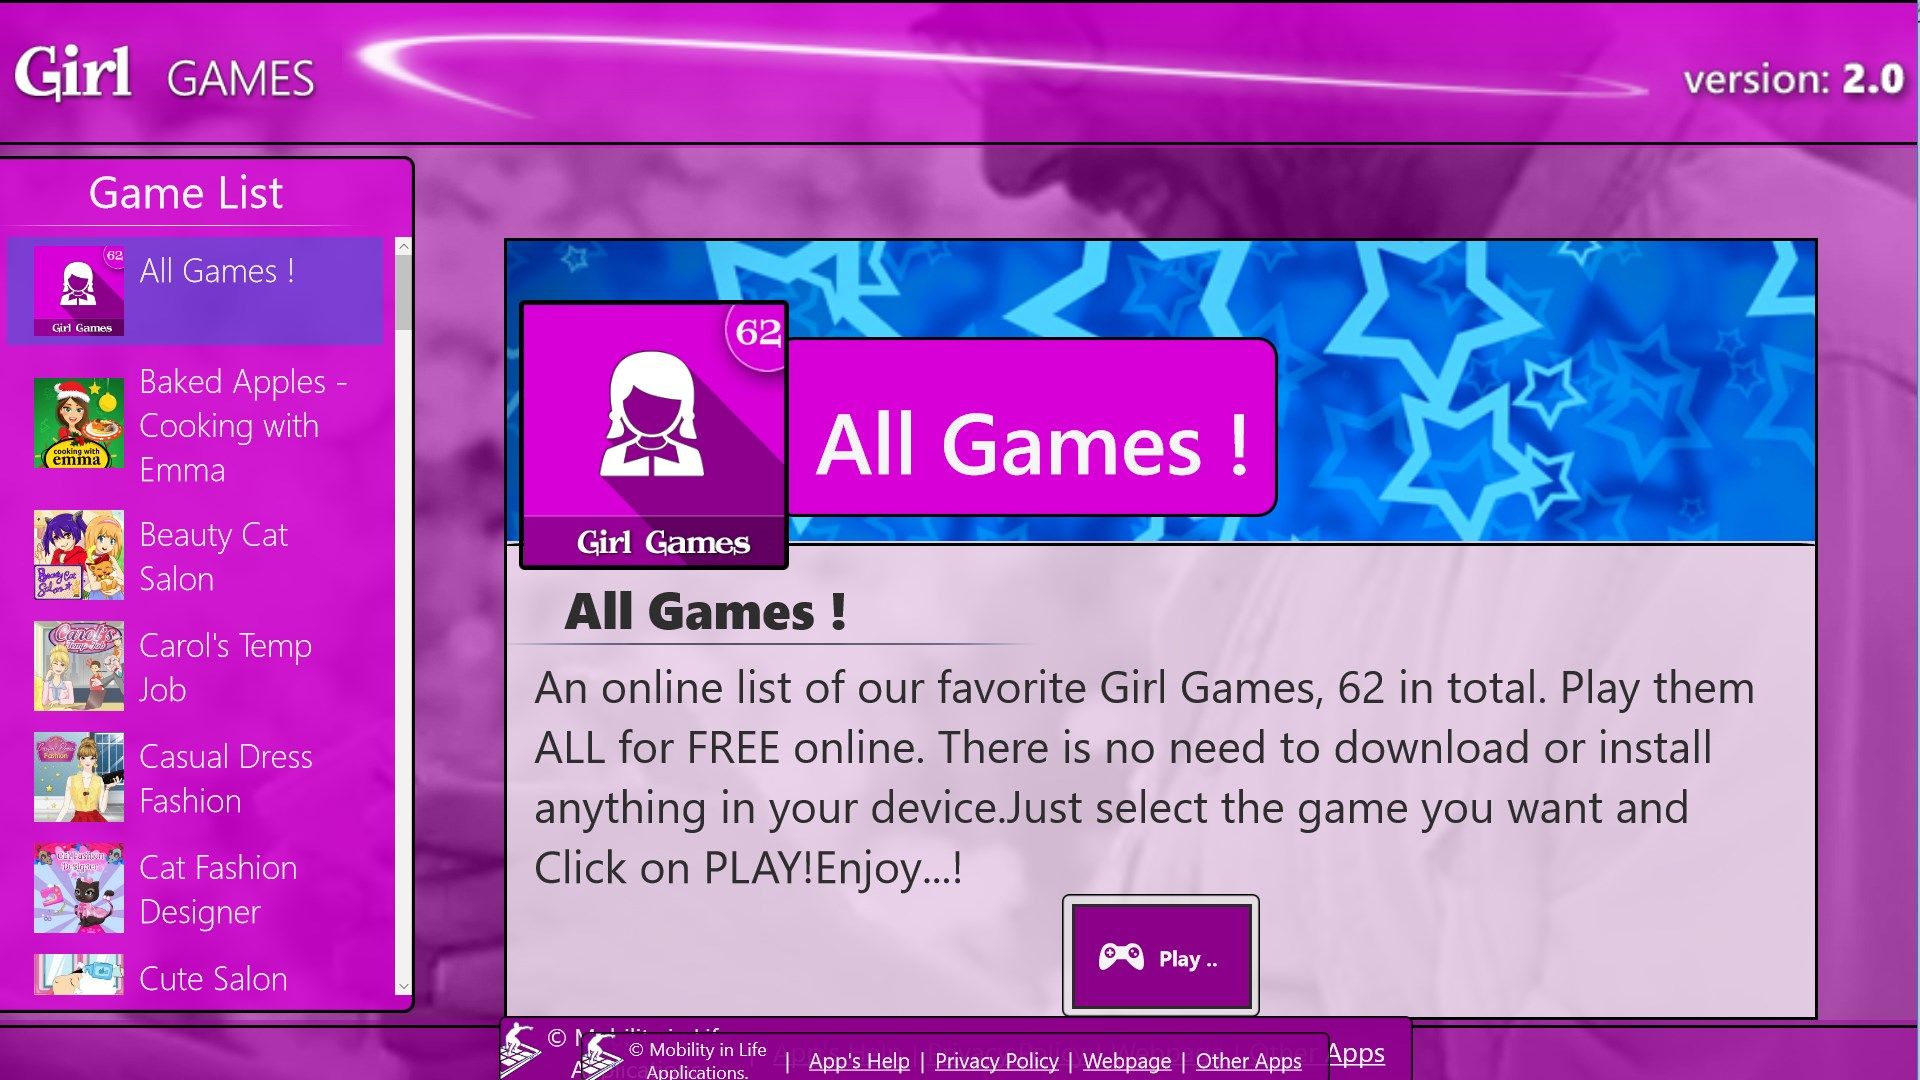 Online Games+ (Girls)